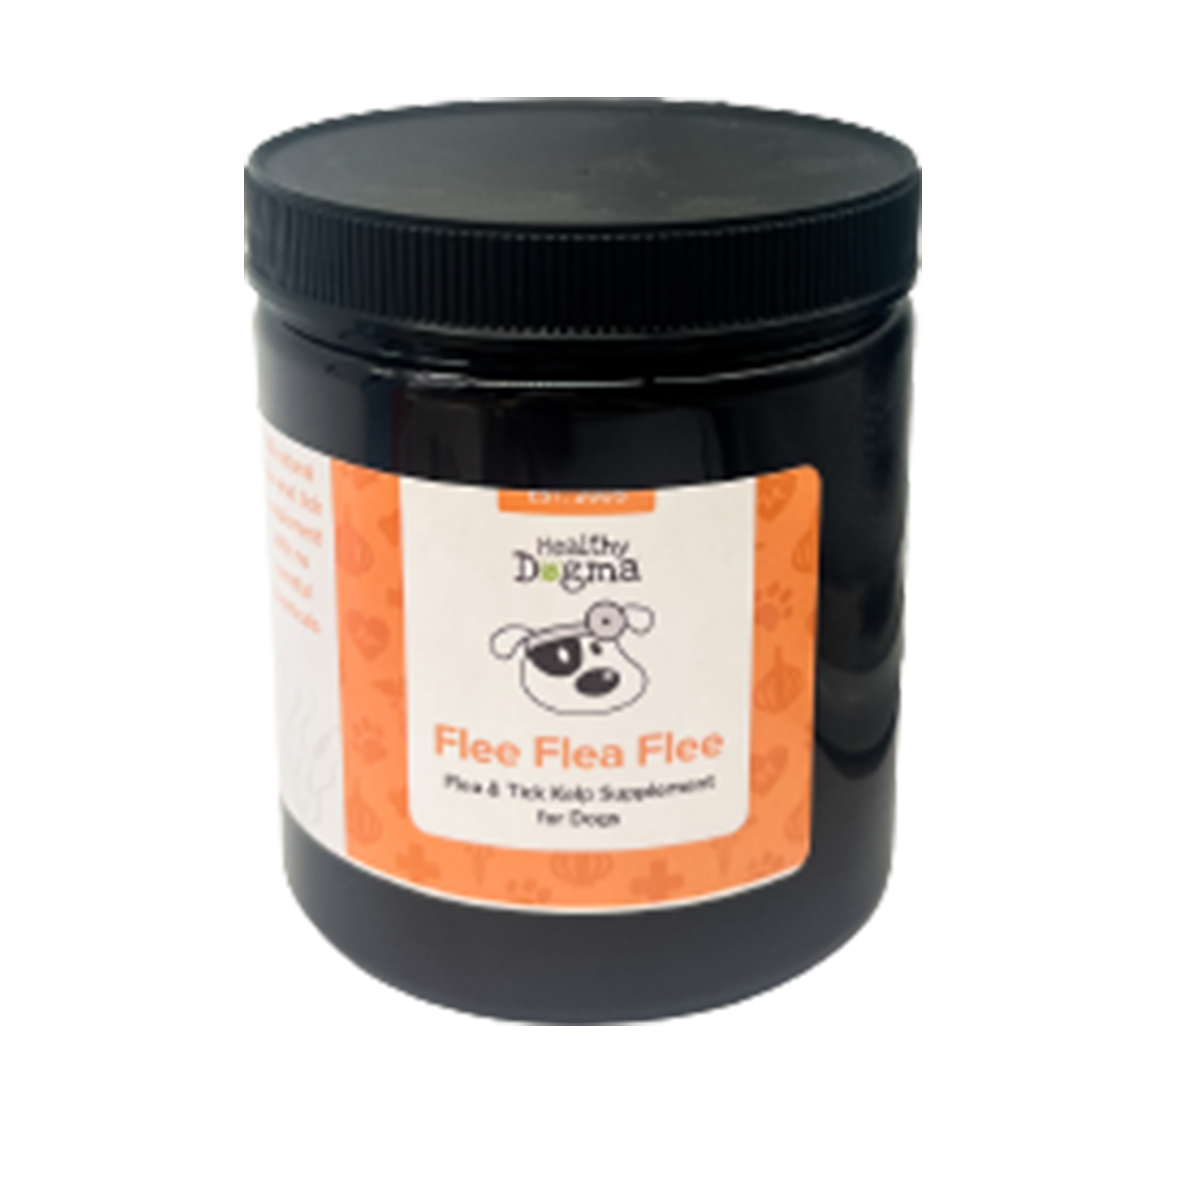 Healthy Dogma Flee Flea Flee Natural Yeast & Garlic Formula Dog Supplement